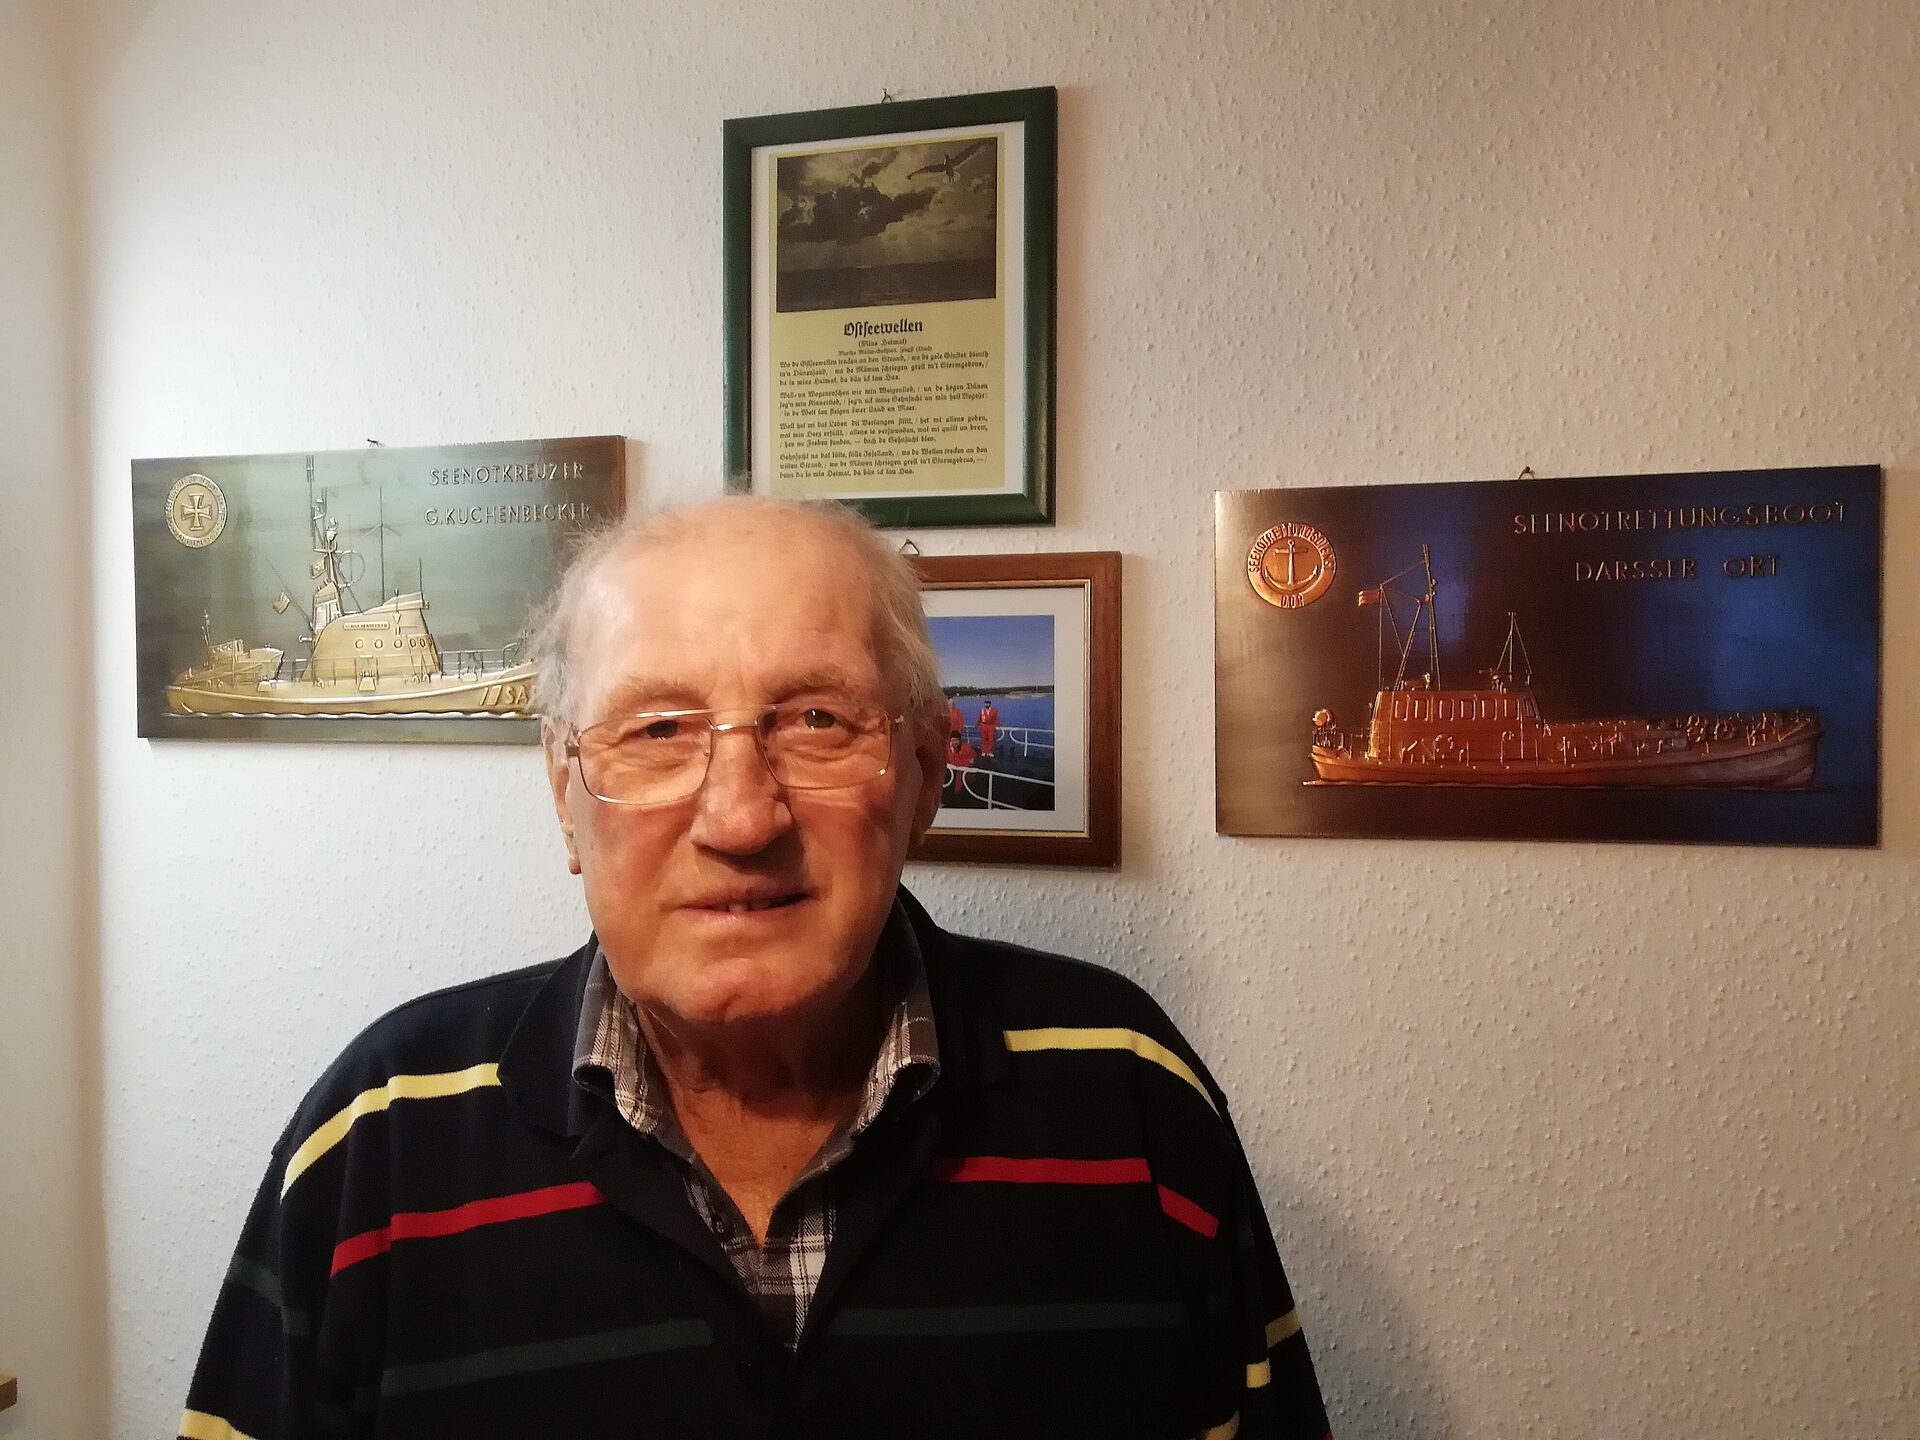 Foto von einem alten Mann vor einer Wand an der Bilder von Schiffen hängen